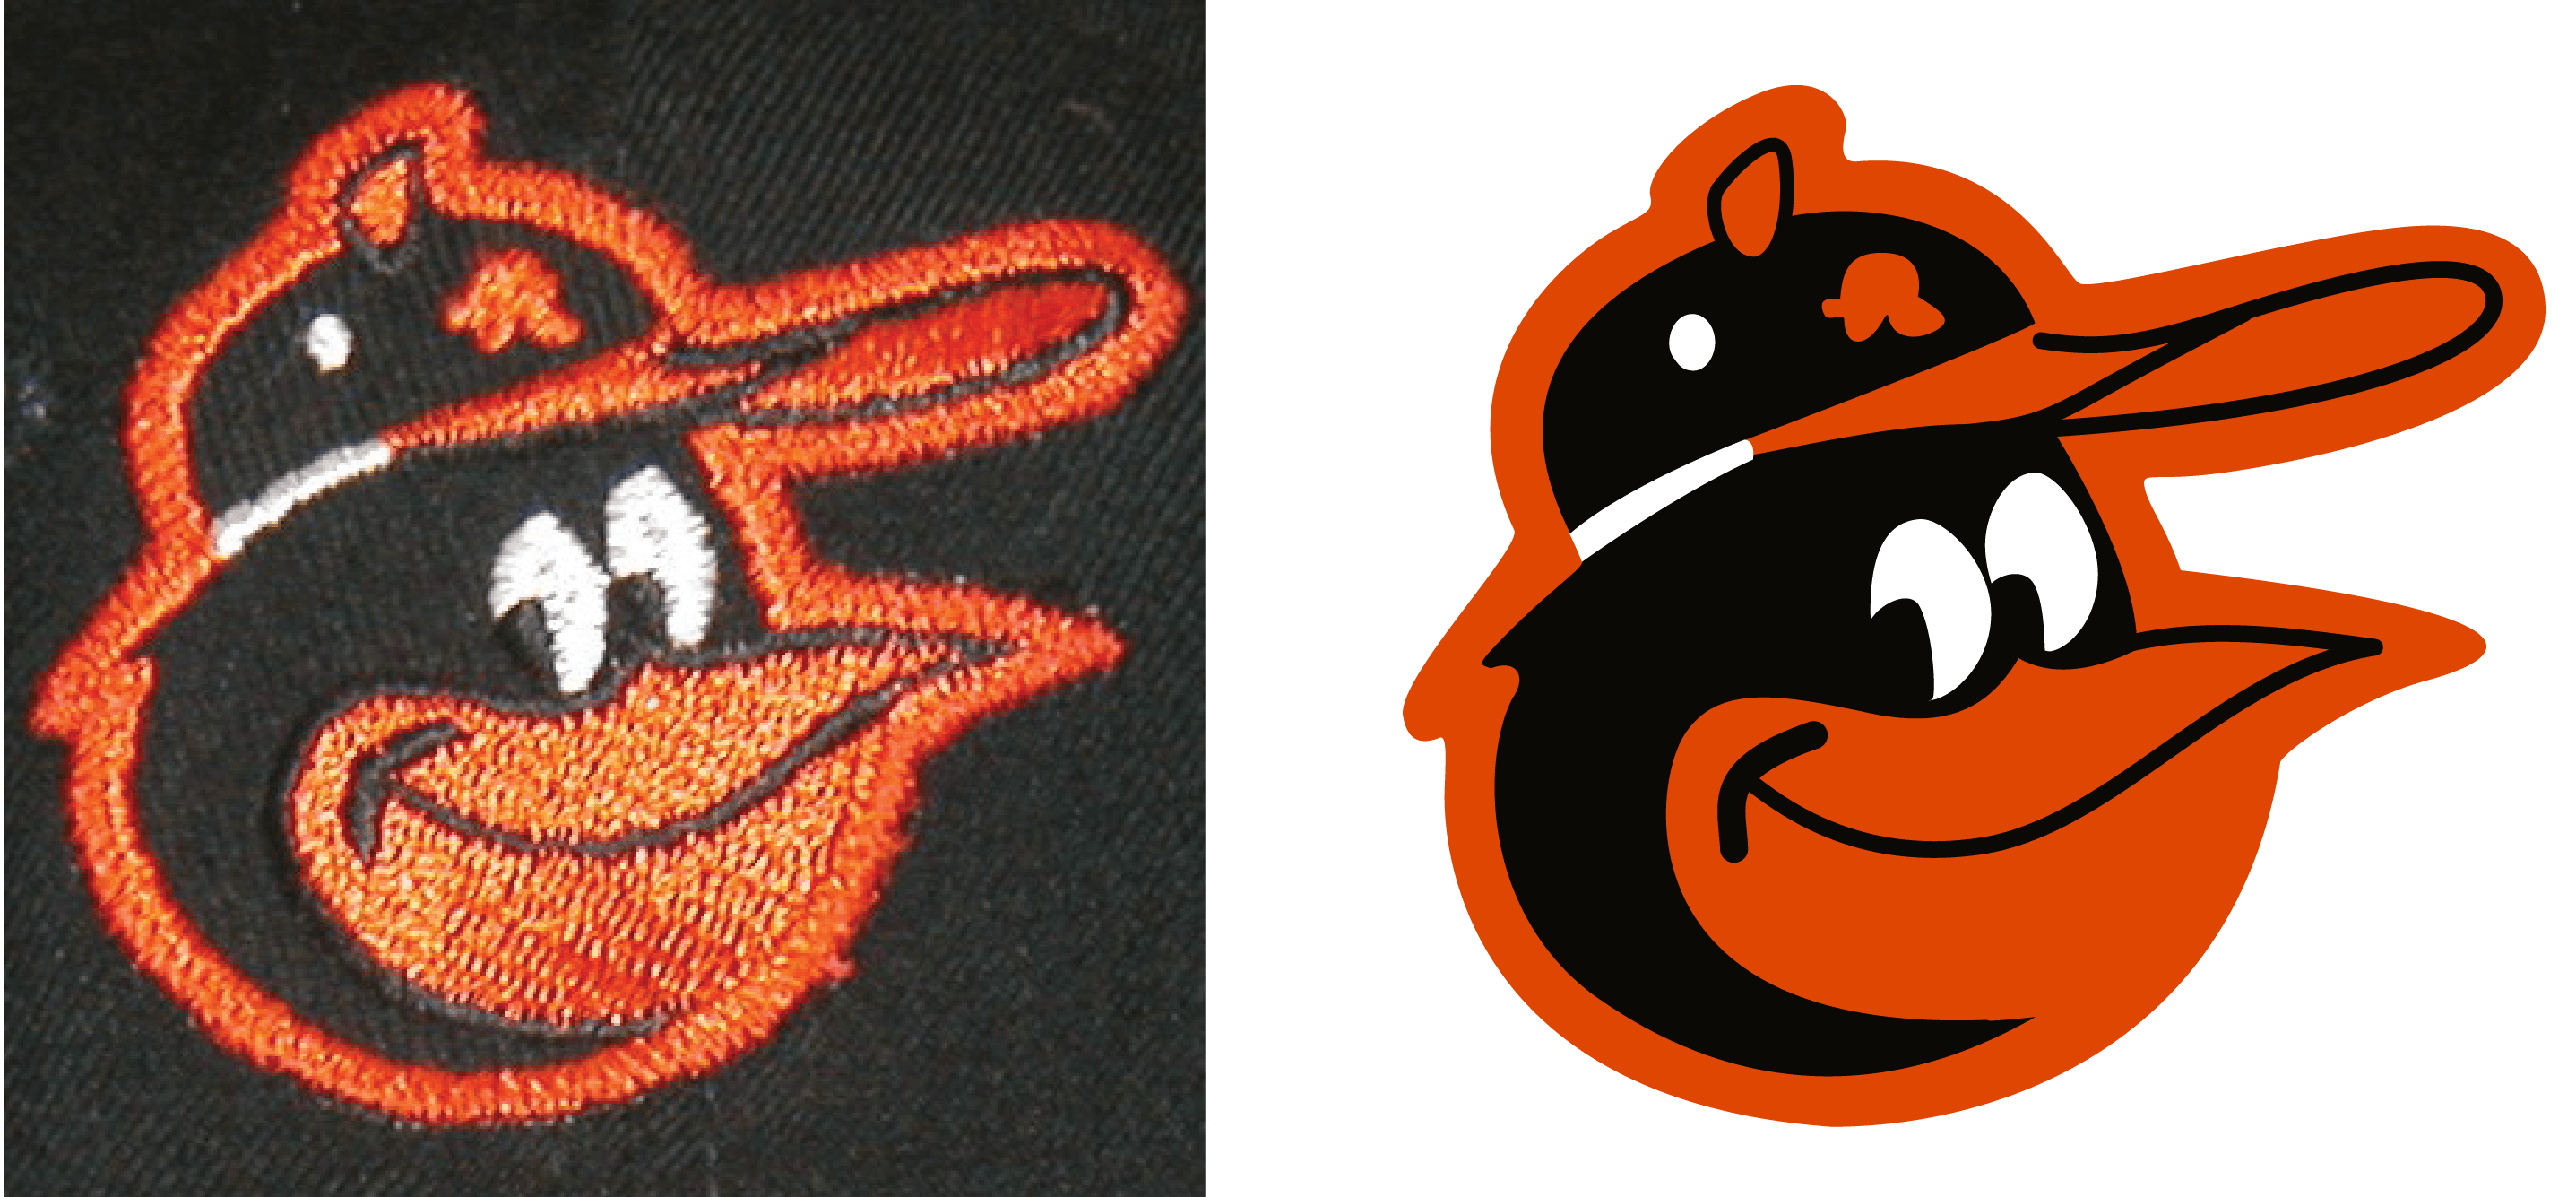 Baltimore Orioles Bird Logo - Baltimore Orioles Cartoon Bird Cap Logos. The Cartoon Bird